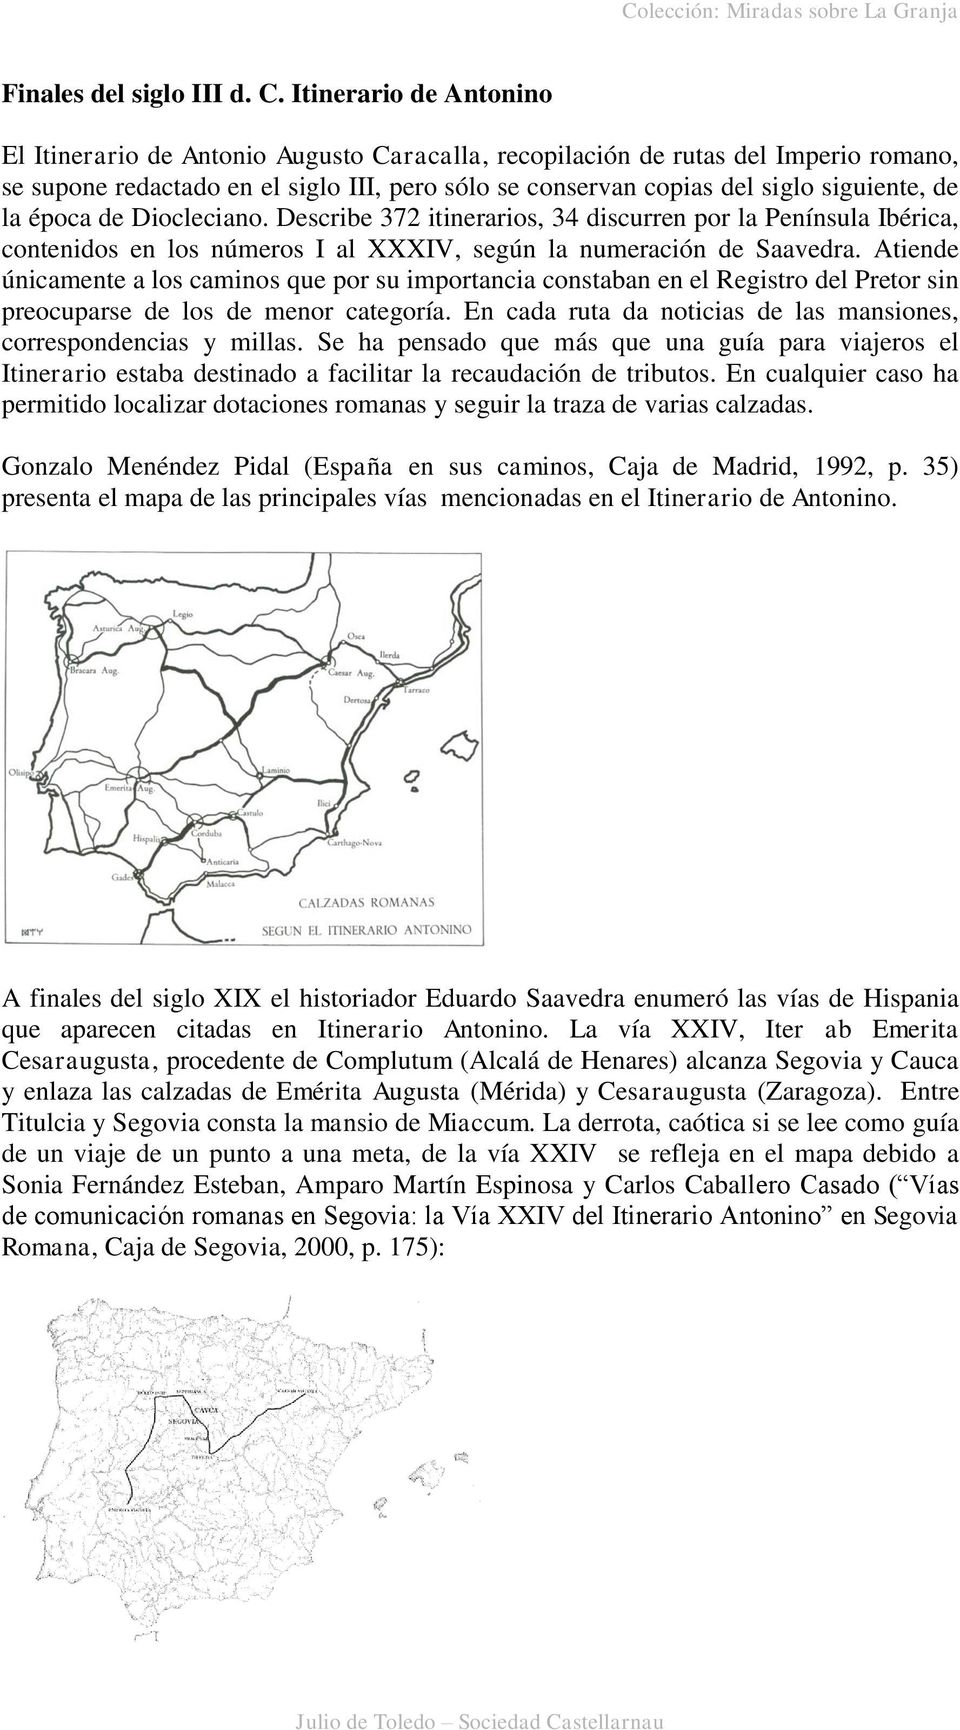 la época de Diocleciano. Describe 372 itinerarios, 34 discurren por la Península Ibérica, contenidos en los números I al XXXIV, según la numeración de Saavedra.